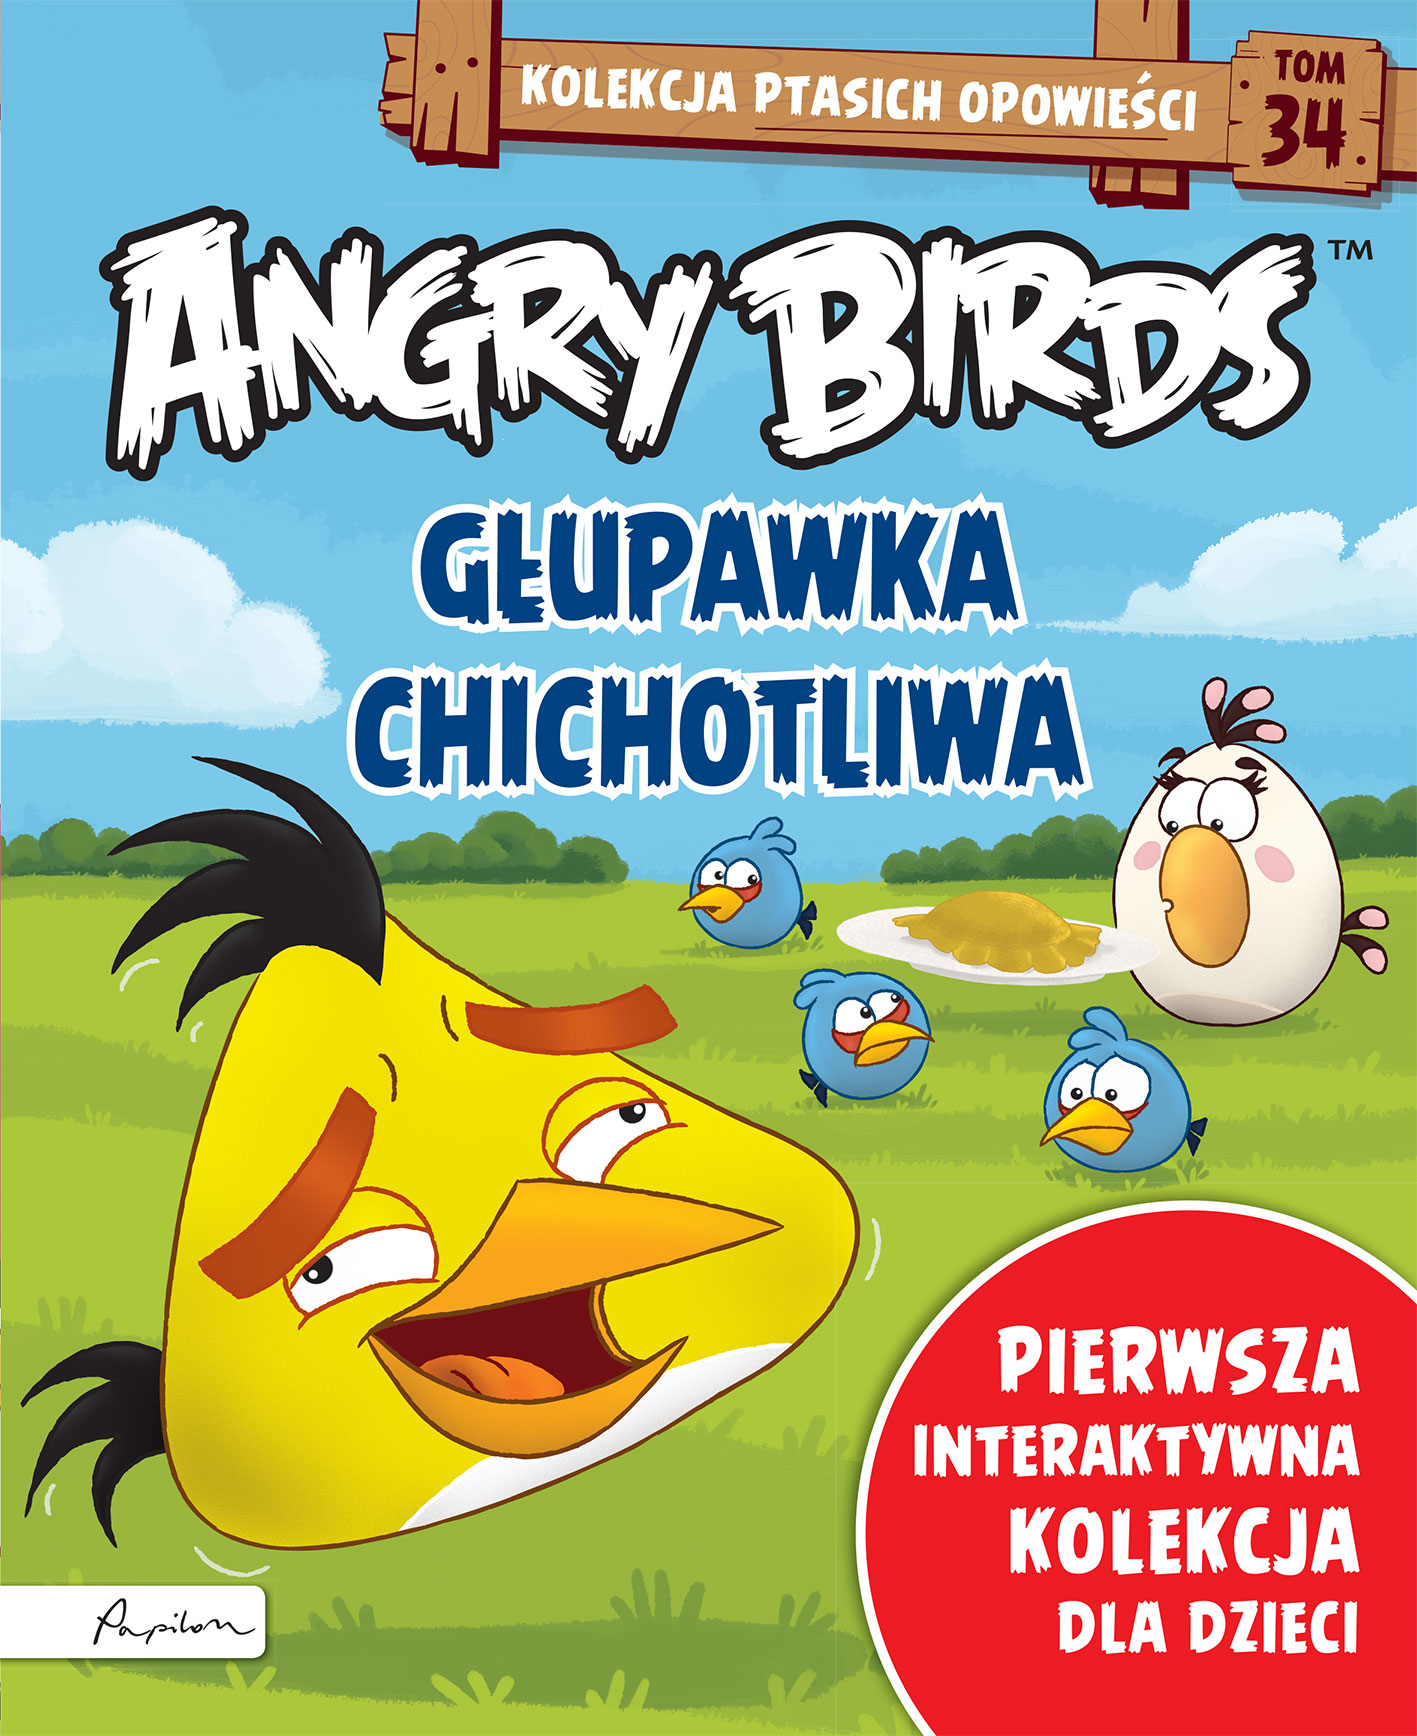 Angry Birds. Kolekcja ptasich opowieści 34. Głupawka chichotliwa